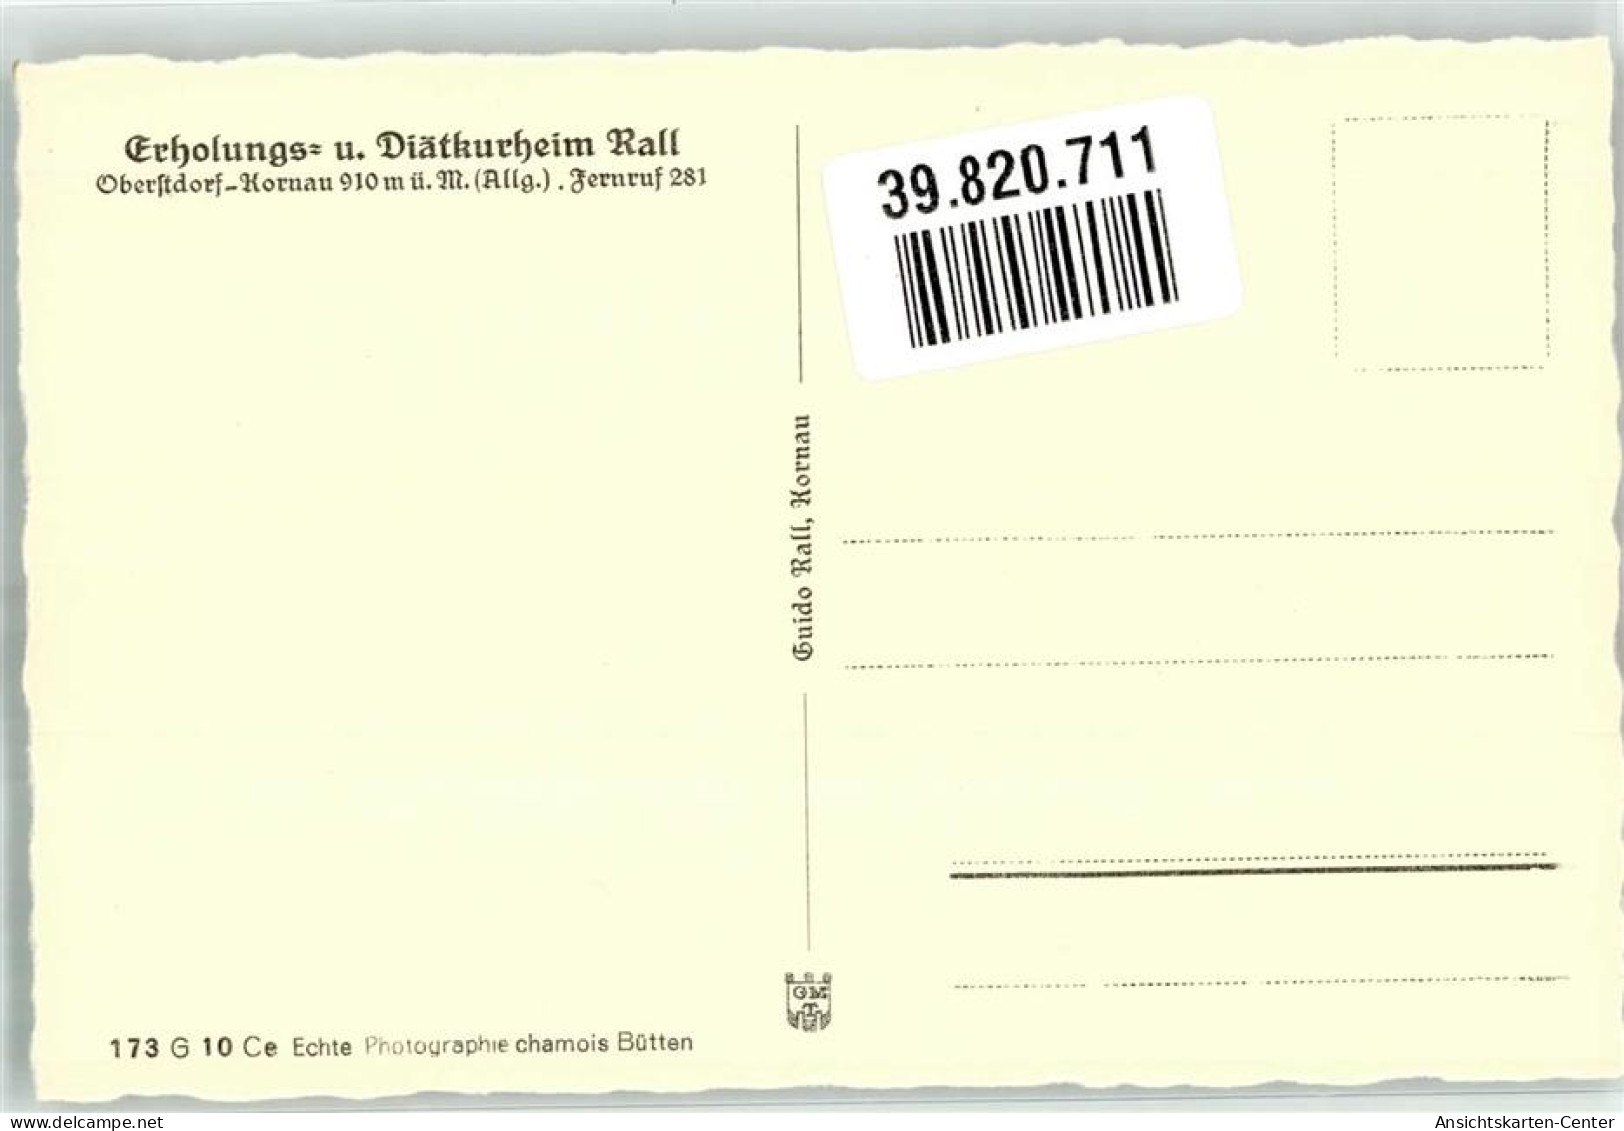 39820711 - Kornau - Oberstdorf